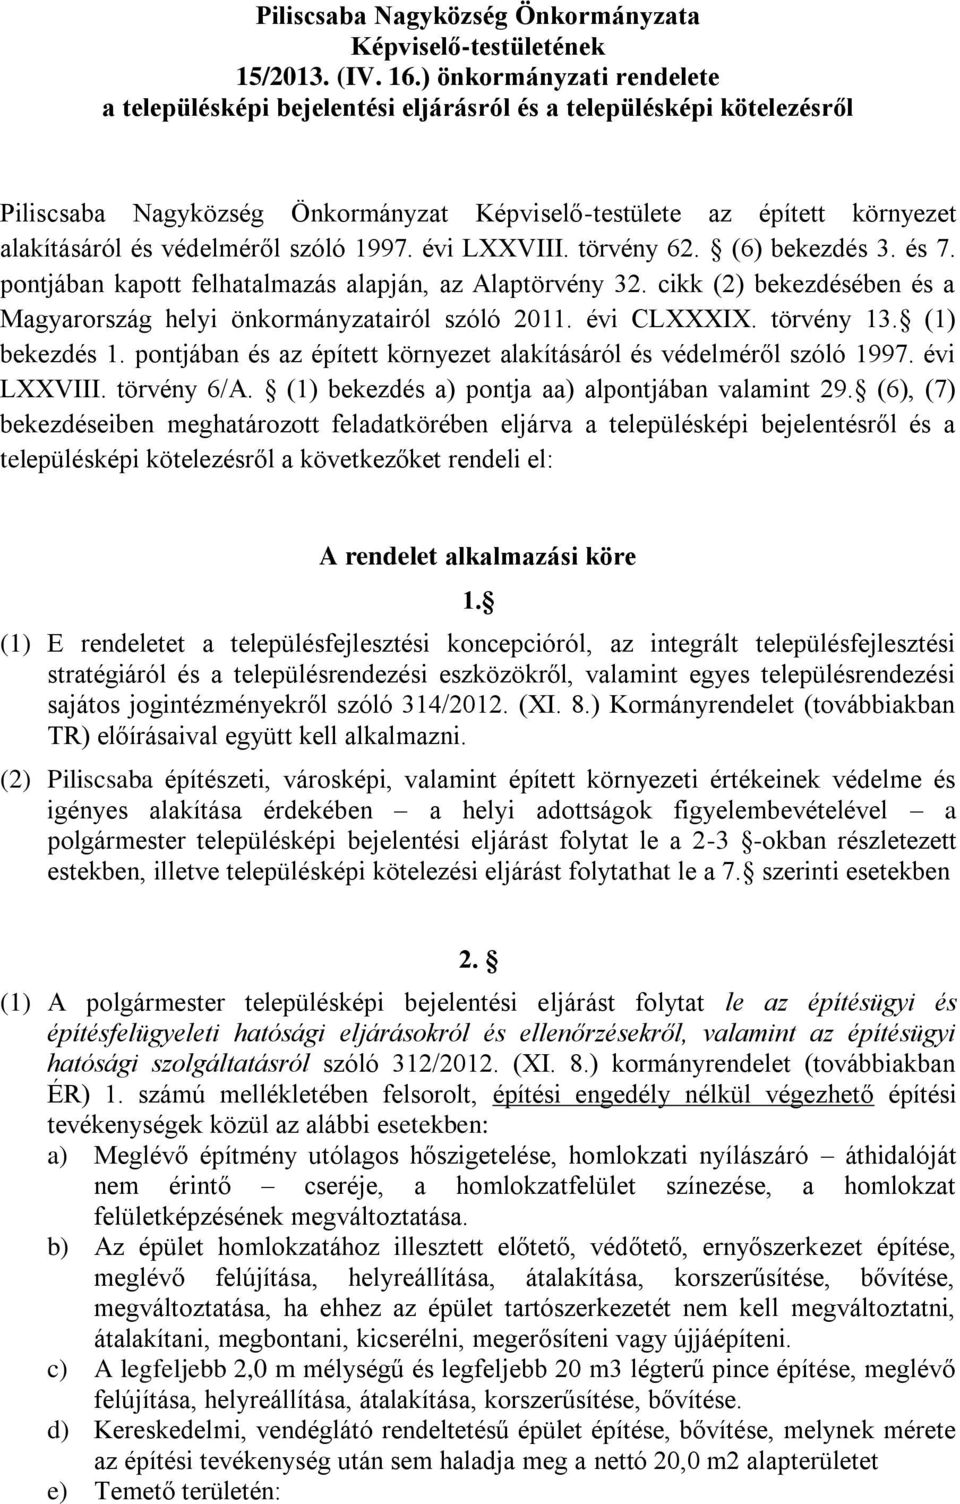 szóló 1997. évi LXXVIII. törvény 62. (6) bekezdés 3. és 7. pontjában kapott felhatalmazás alapján, az Alaptörvény 32. cikk (2) bekezdésében és a Magyarország helyi önkormányzatairól szóló 2011.